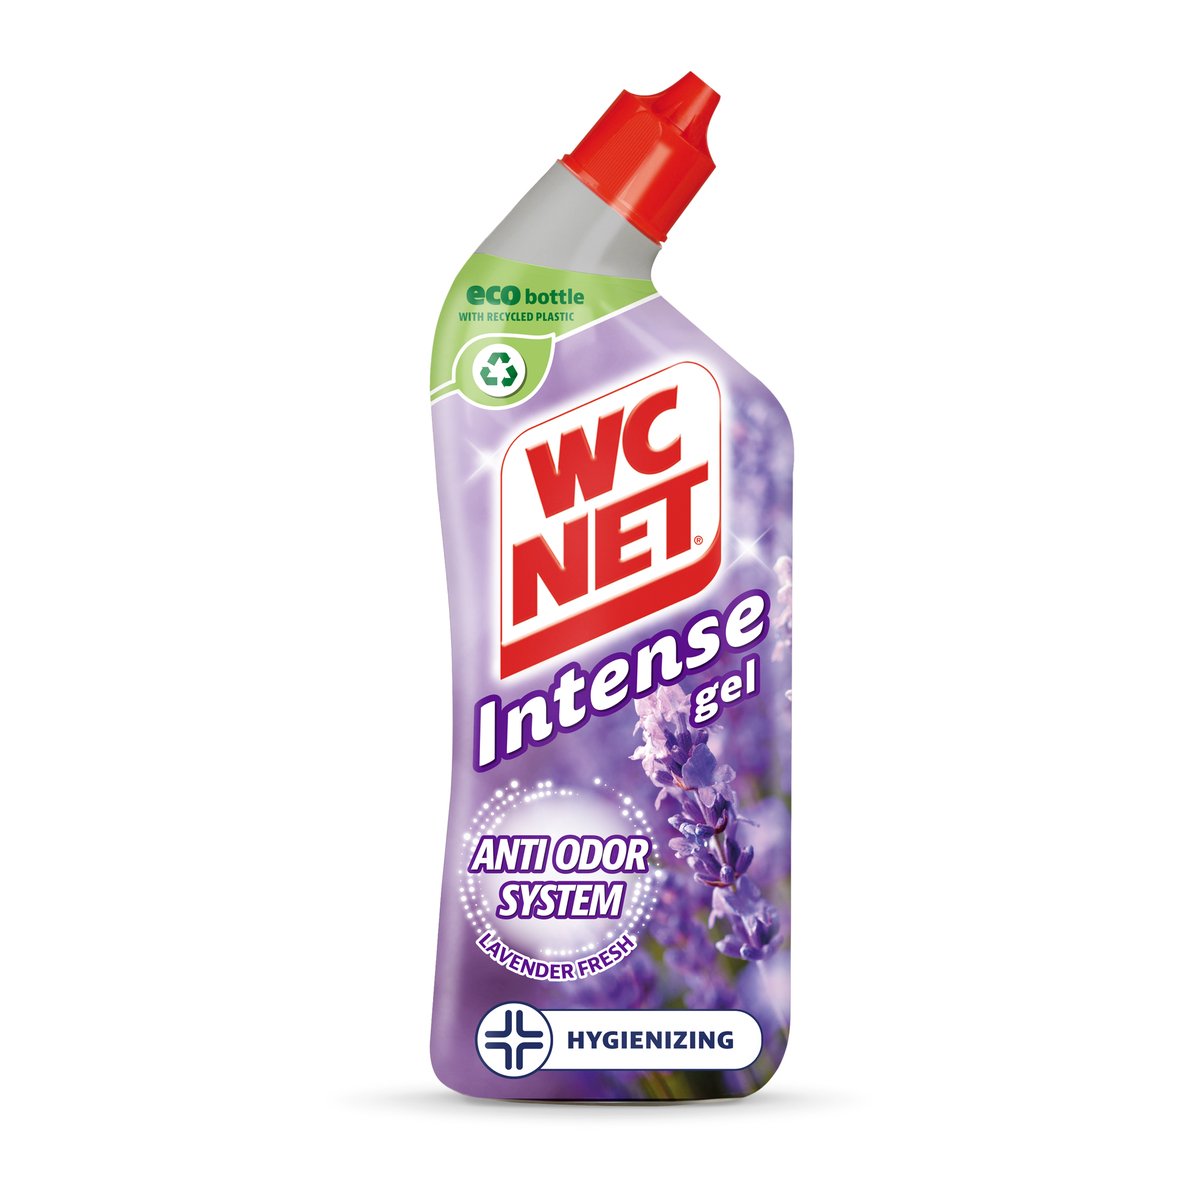 WC NET Toilet Cleaner Bleach Gel, Ocean Fresh, 750 Ml: Buy Online at Best  Price in UAE 